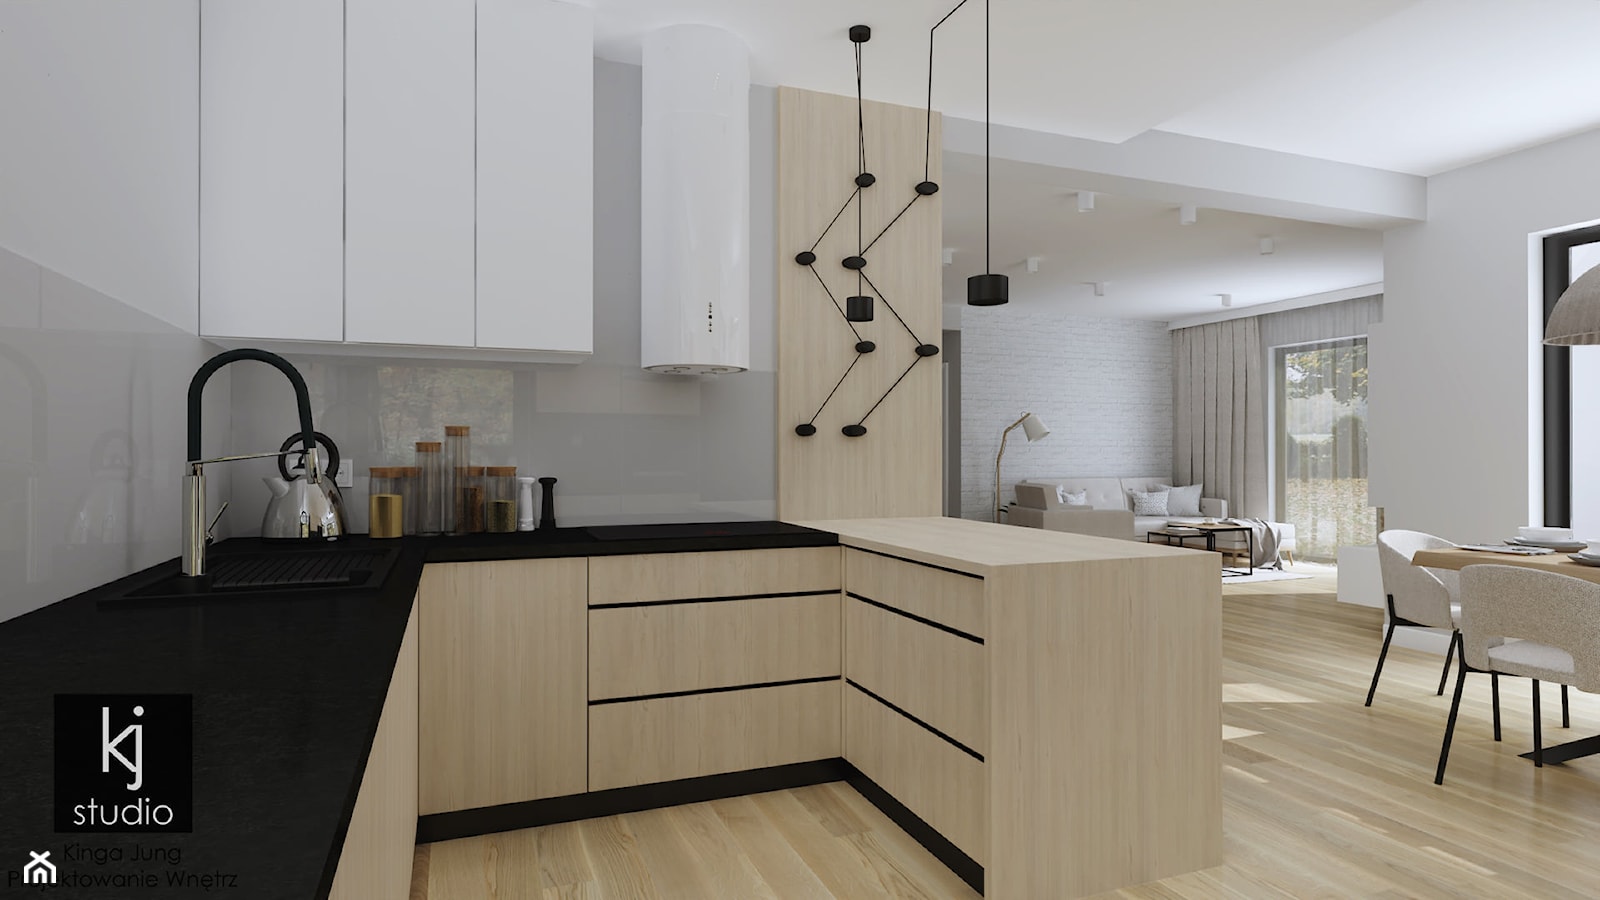 Dom w stylu skandynawskim - kuchnia - Kuchnia, styl skandynawski - zdjęcie od KJ Studio Projektowanie wnętrz - Homebook